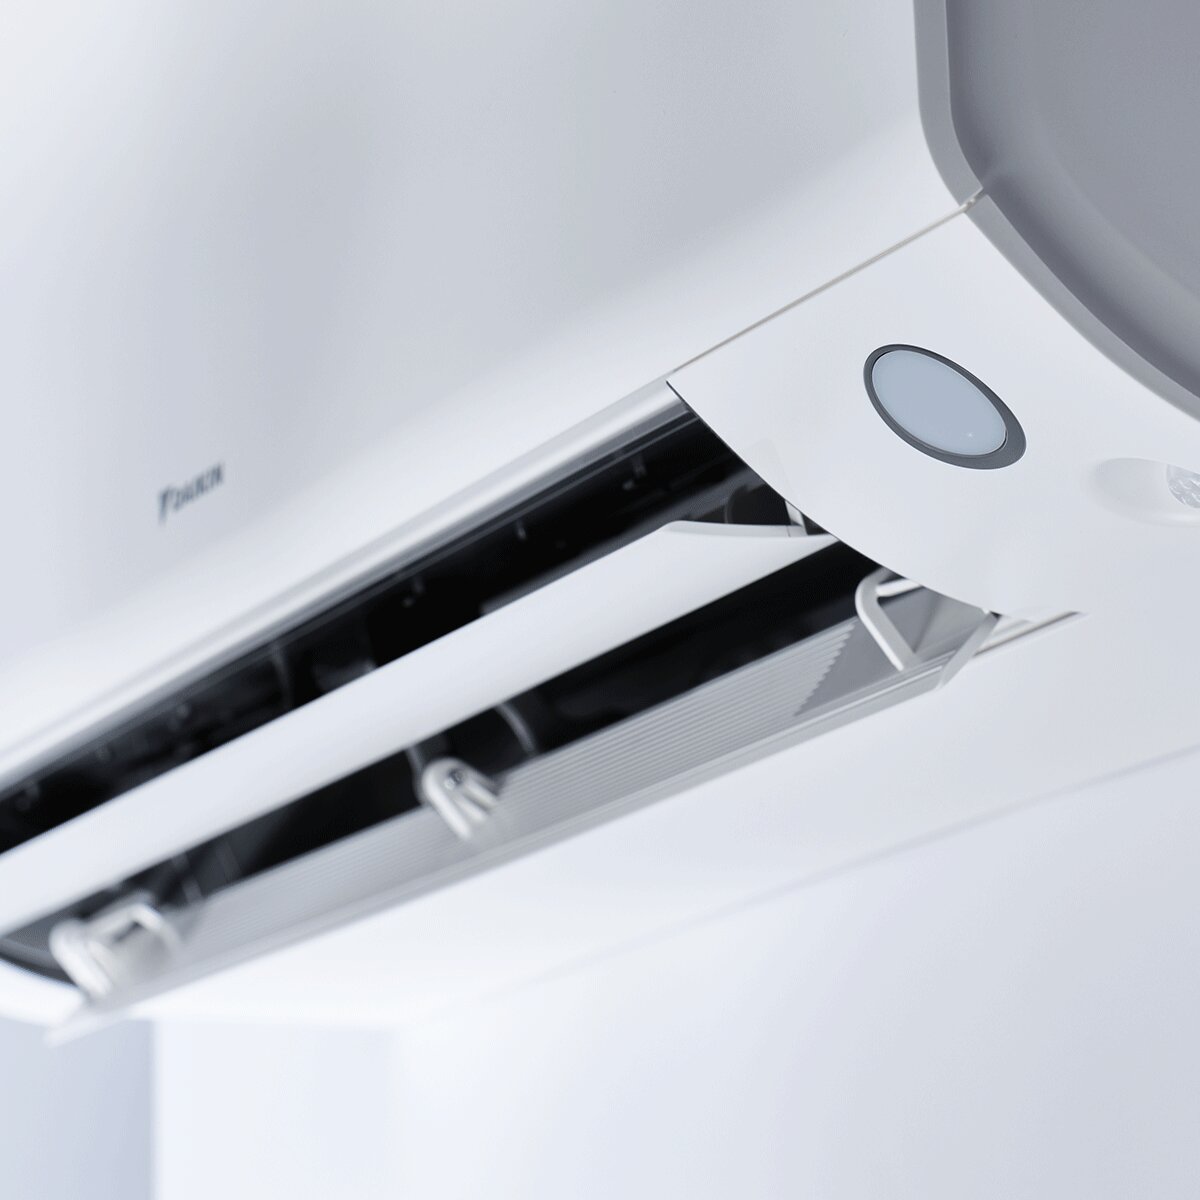 Système de climatisation et d'eau chaude sanitaire double split Daikin Multi+ - Unités intérieures Perfera All Seasons 9000+12000 BTU - Réservoir 120 l